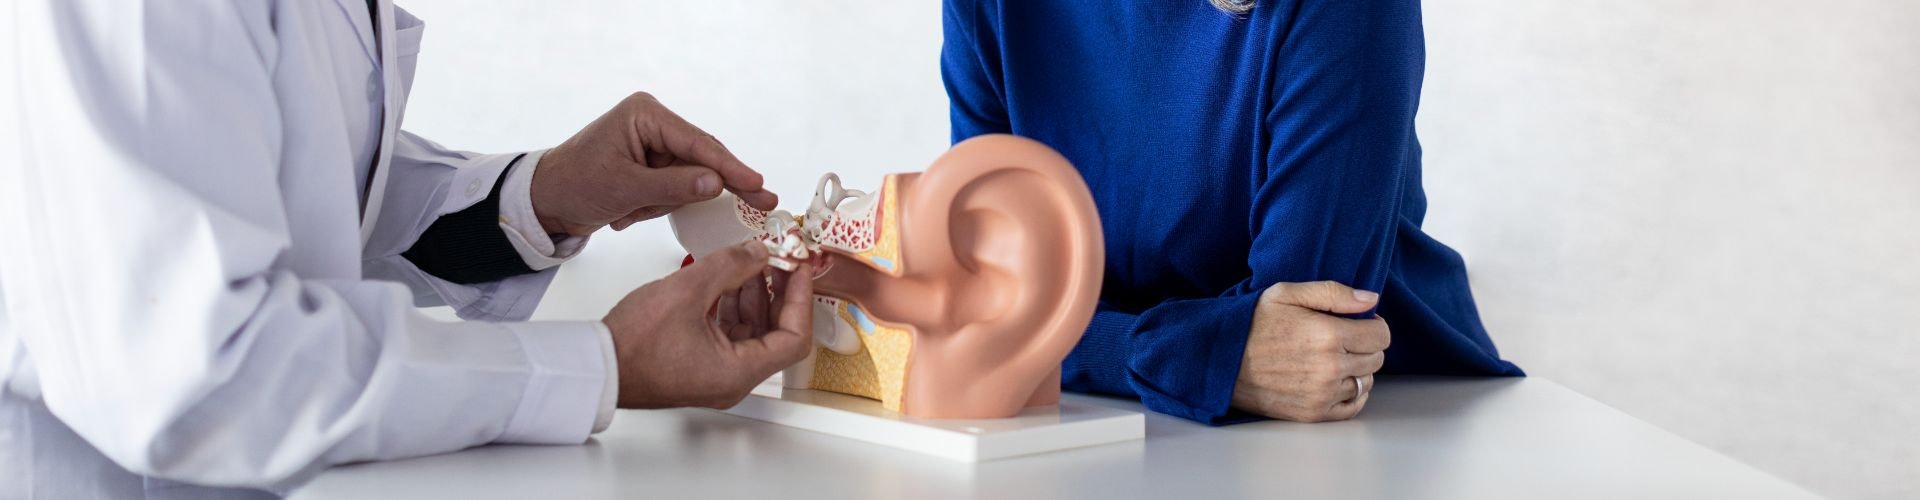 Så här fungerar hörseln